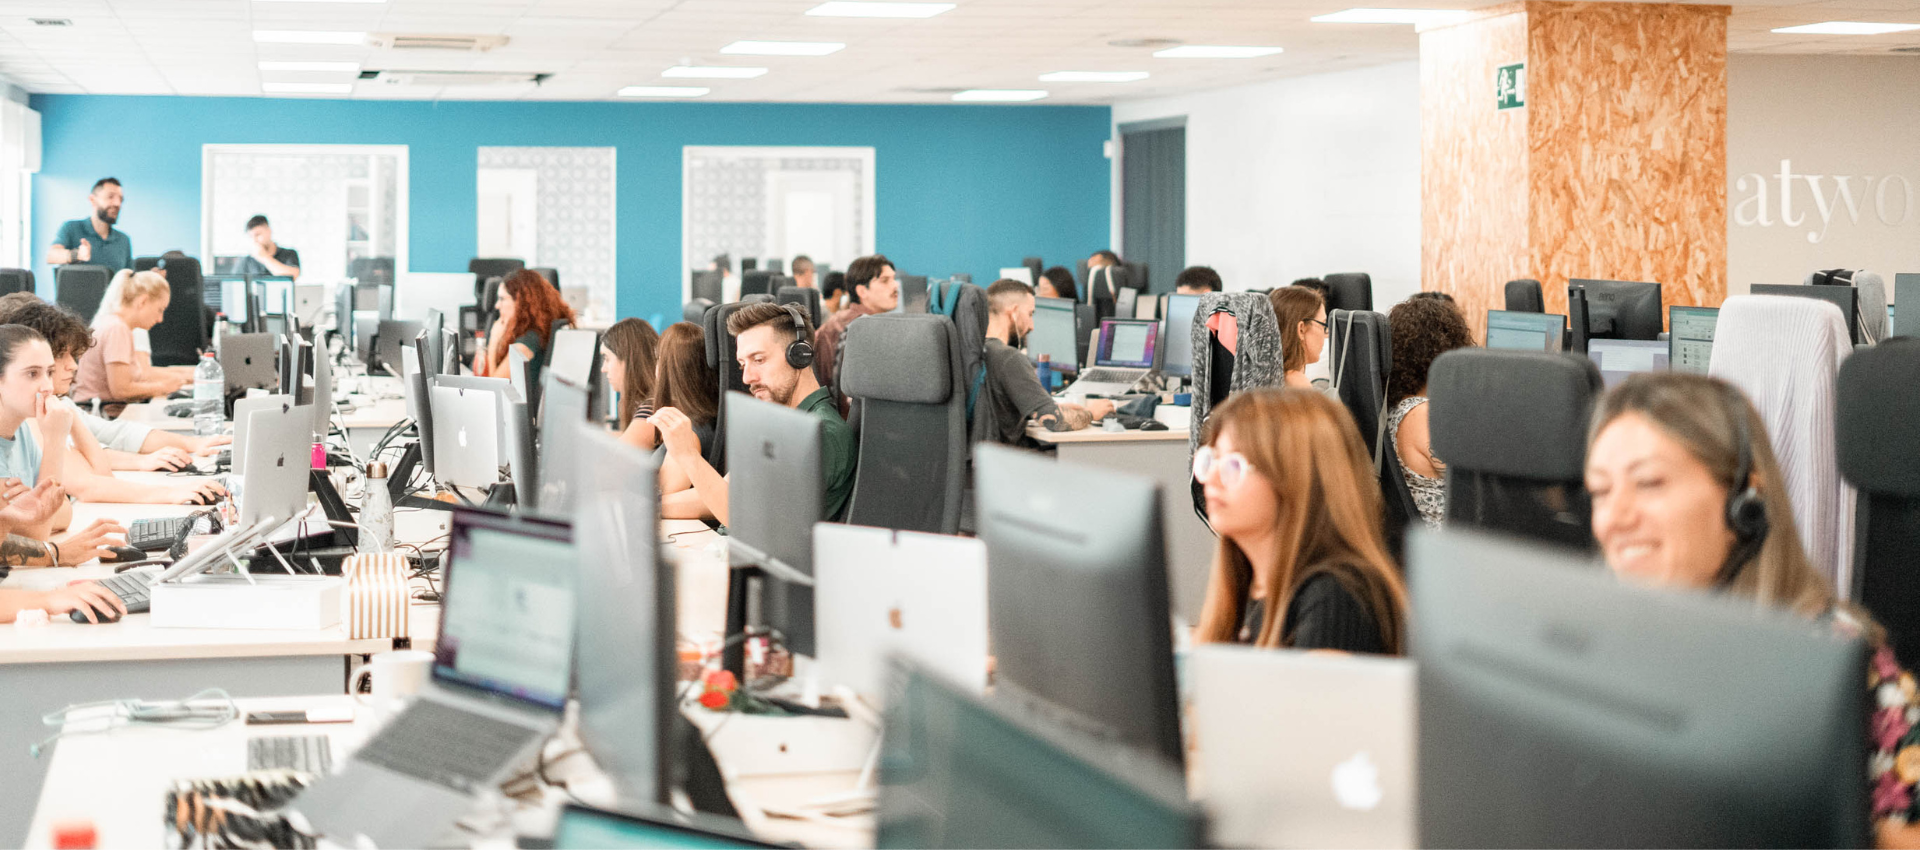 un grupo de hombres y mujeres están trabajando en una oficina llena de computadoras